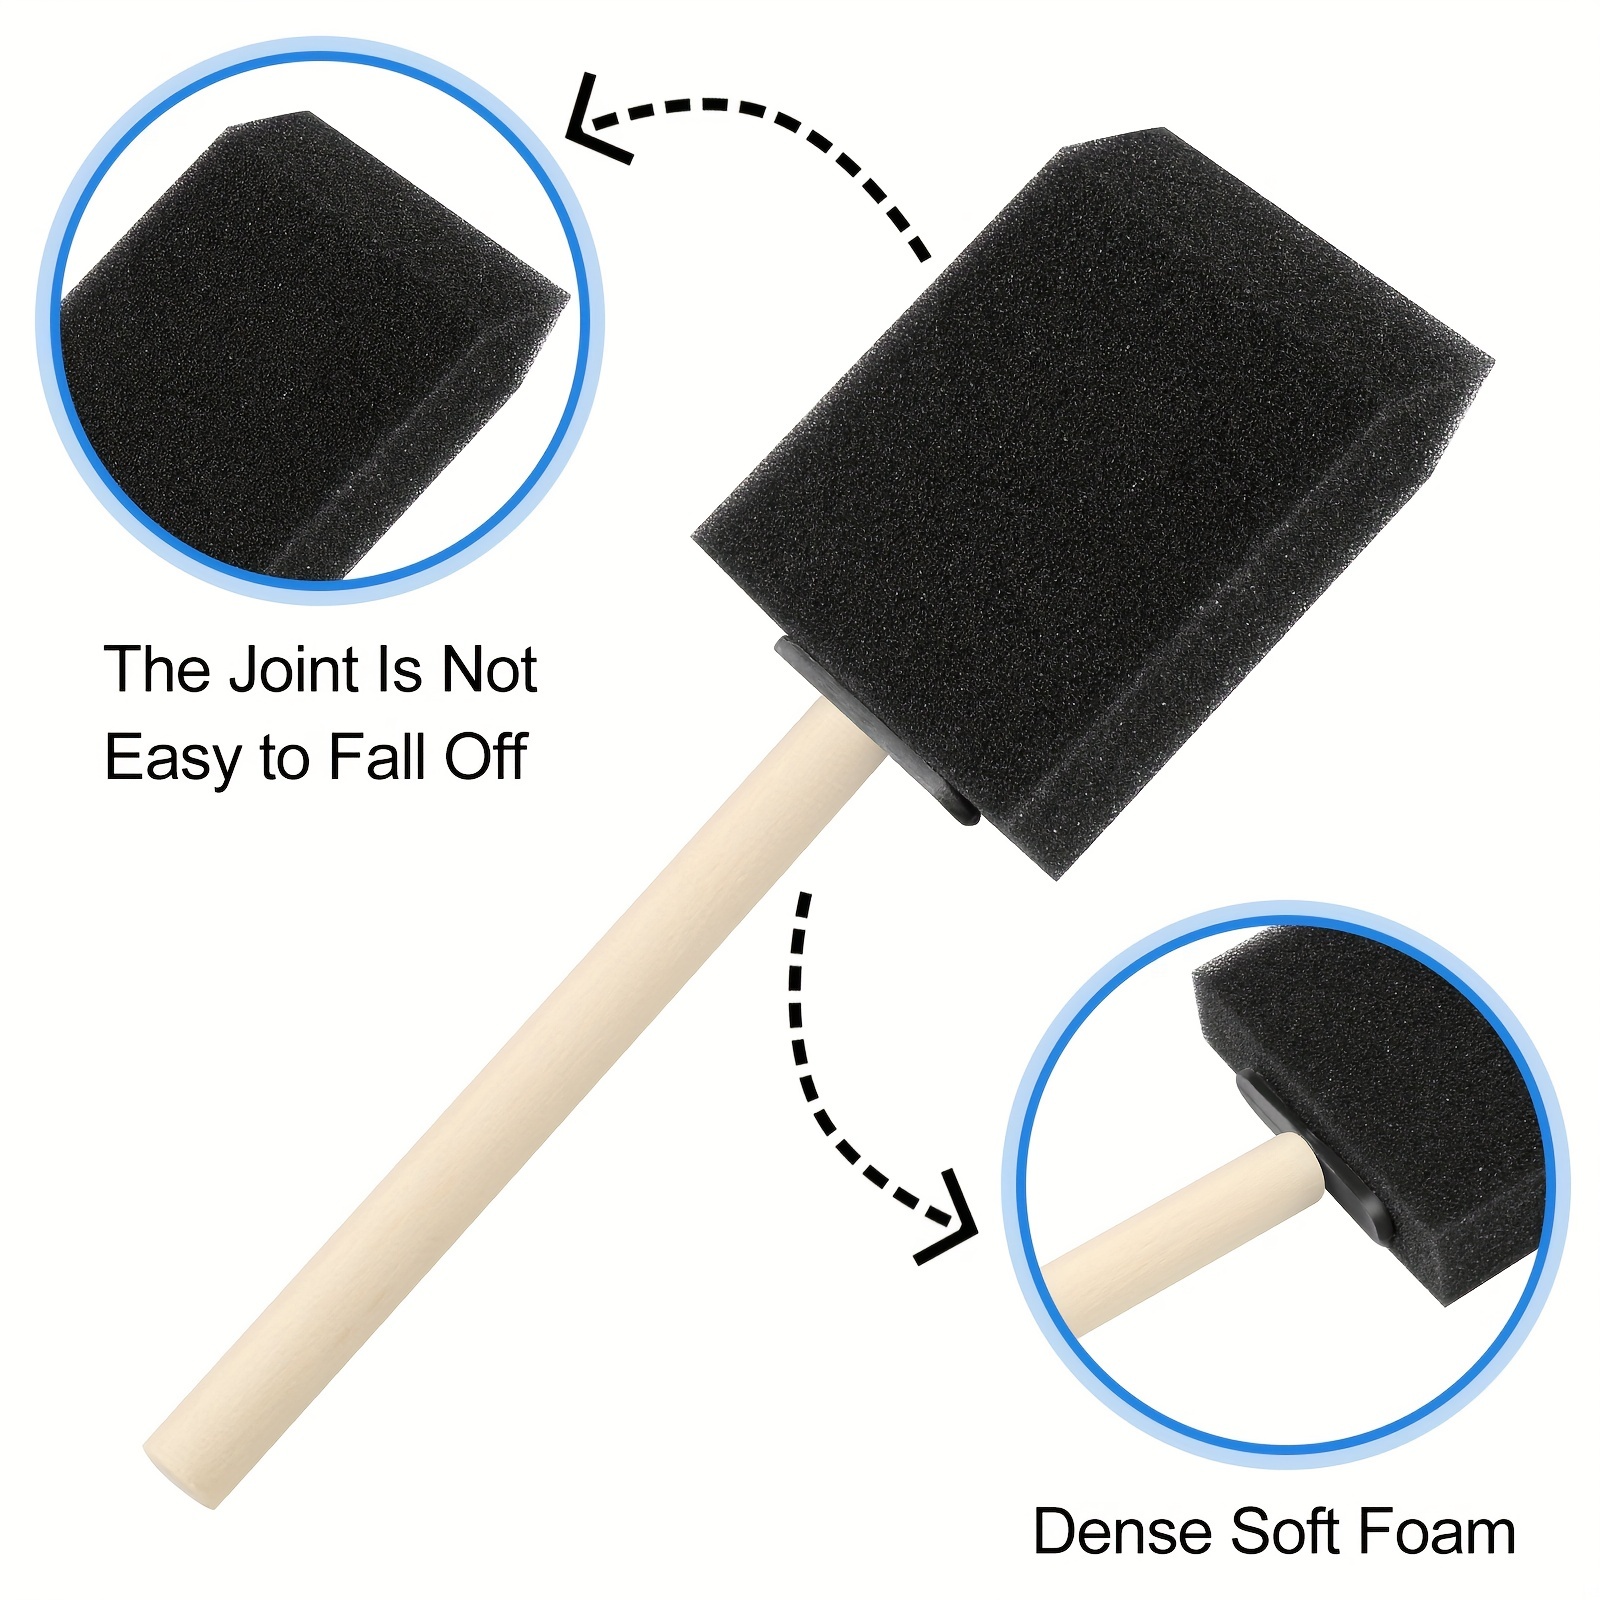 Sponge Brushes for Painting, Foam Paint Brushes Sponge Paint Brush - Wood  Handles Sponge Foam Brush Painting Foam Brush Tool in Black for Acrylics